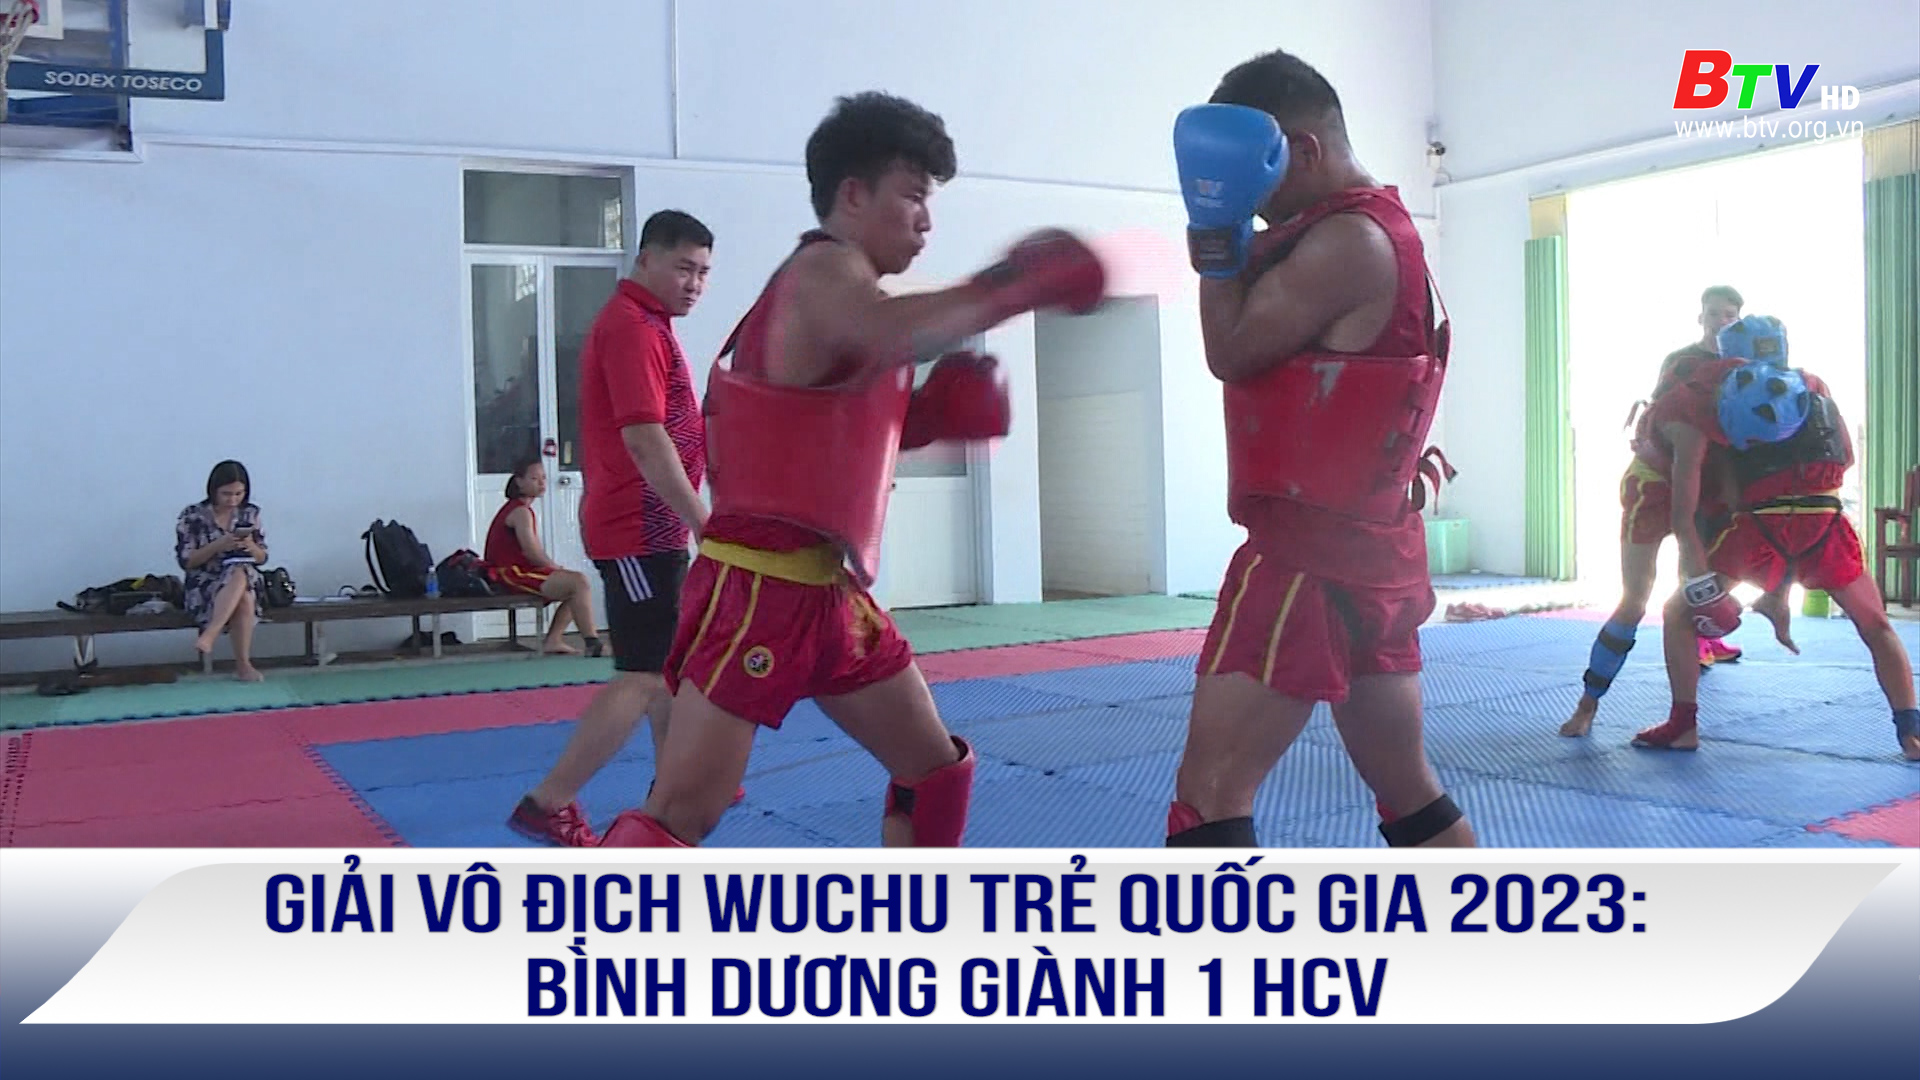 Giải vô địch Wuchu trẻ quốc gia 2023: Bình Dương giành 1 HCV